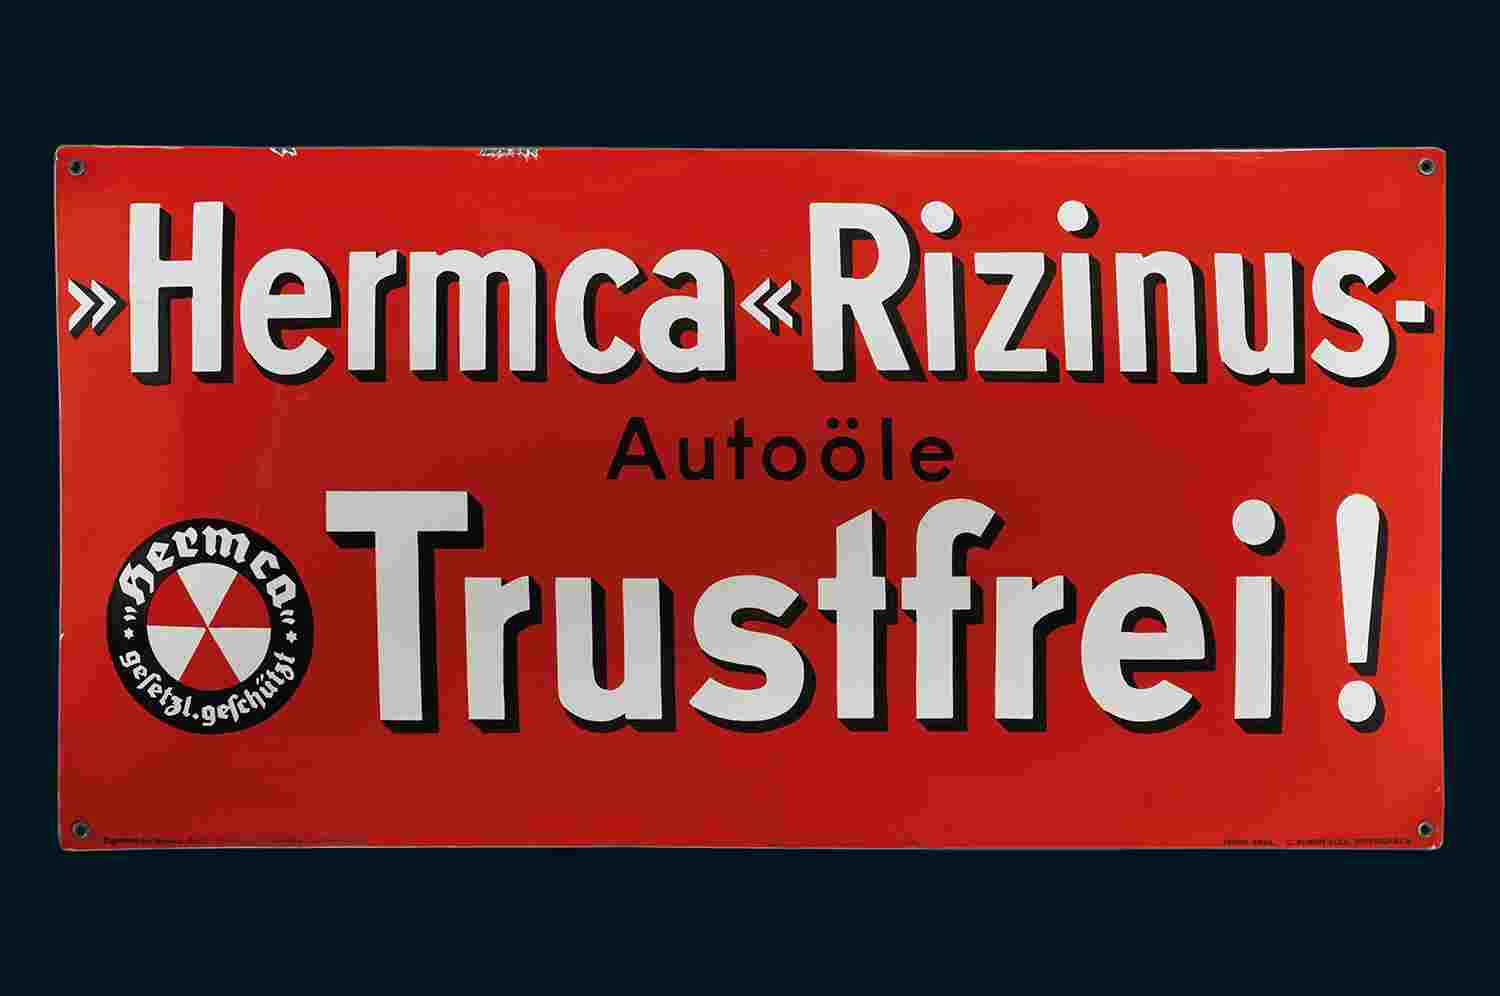 Hermca Rizinus-Autoöle Trustfrei 